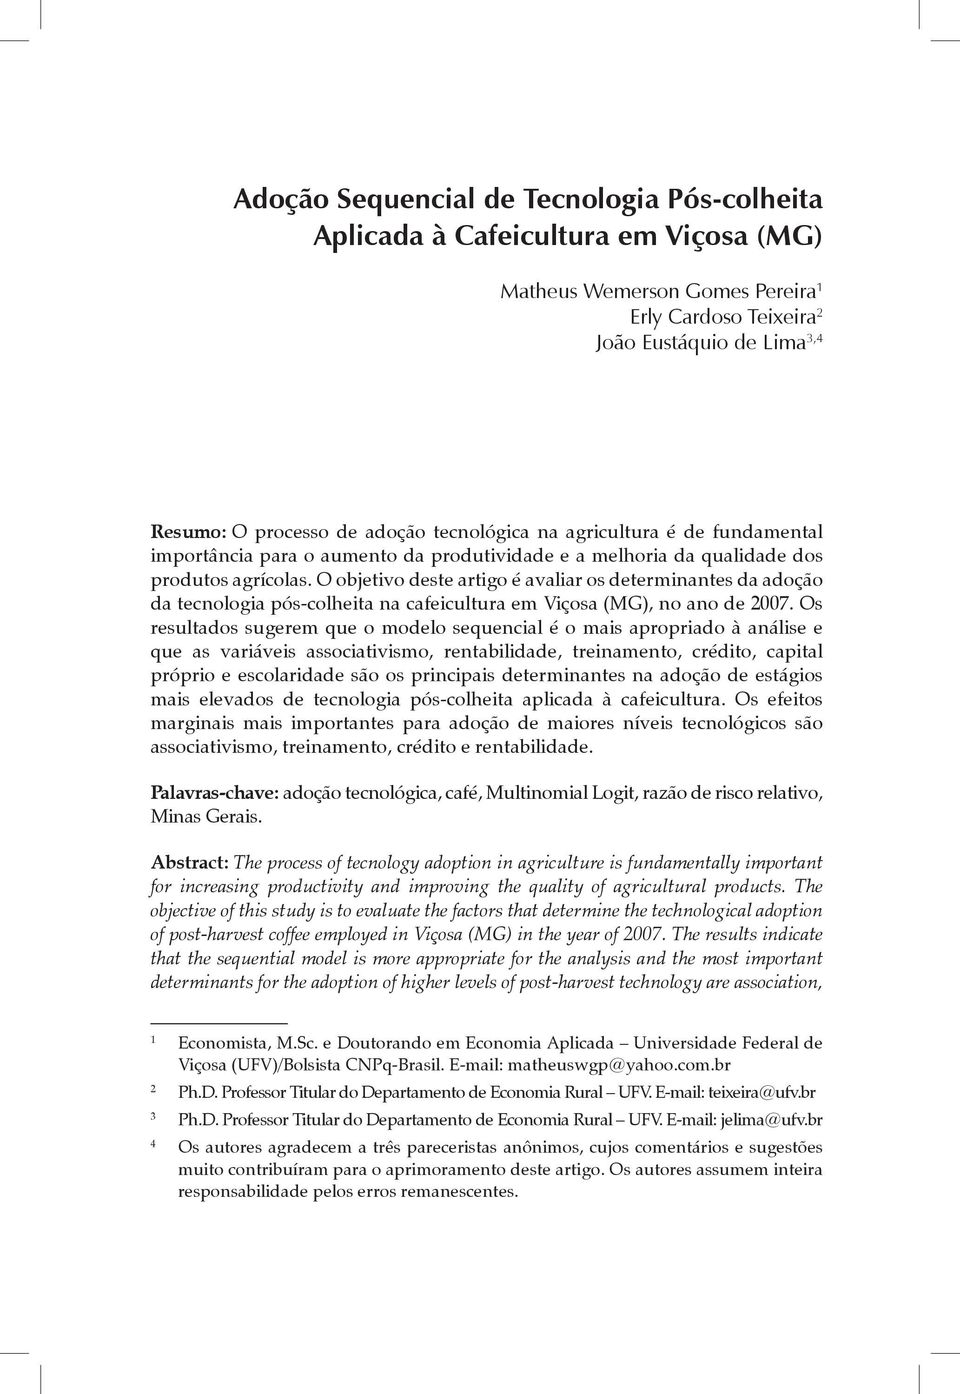 O objetivo deste artigo é avaliar os determinantes da adoção da tecnologia pós-colheita na cafeicultura em Viçosa (MG), no ano de 2007.